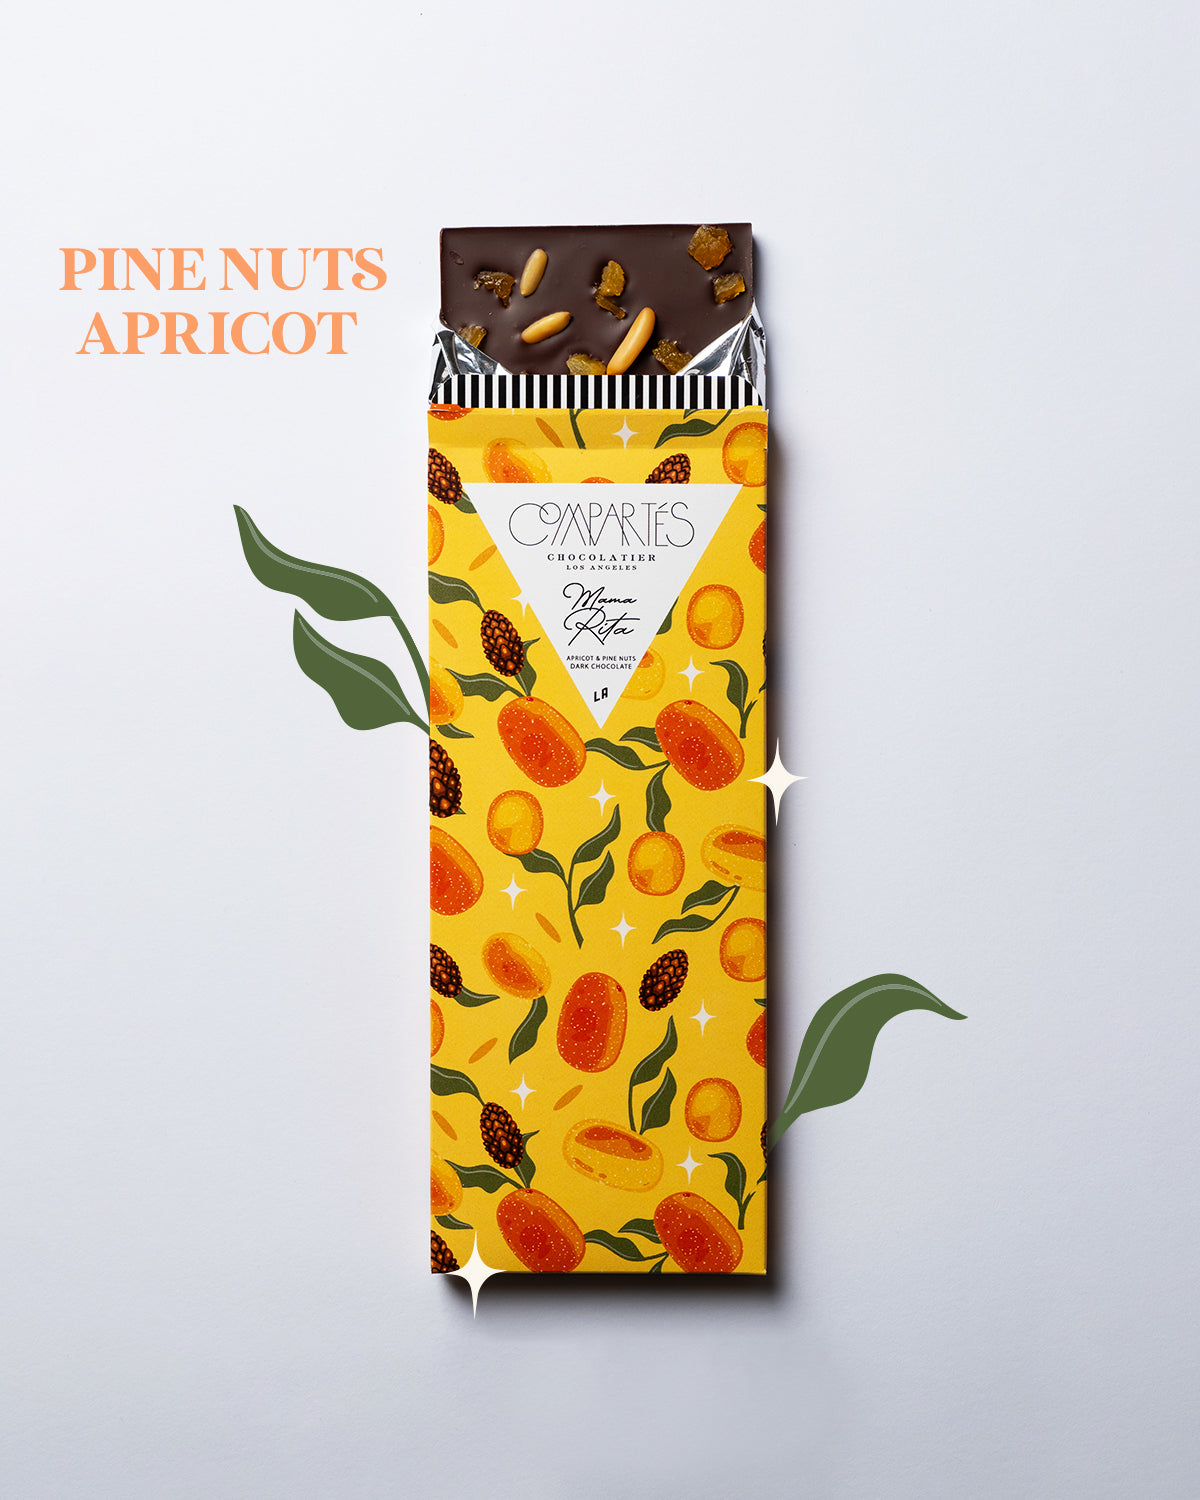 Compartes X Mama Rita Apricot & Pine Nuts Bar